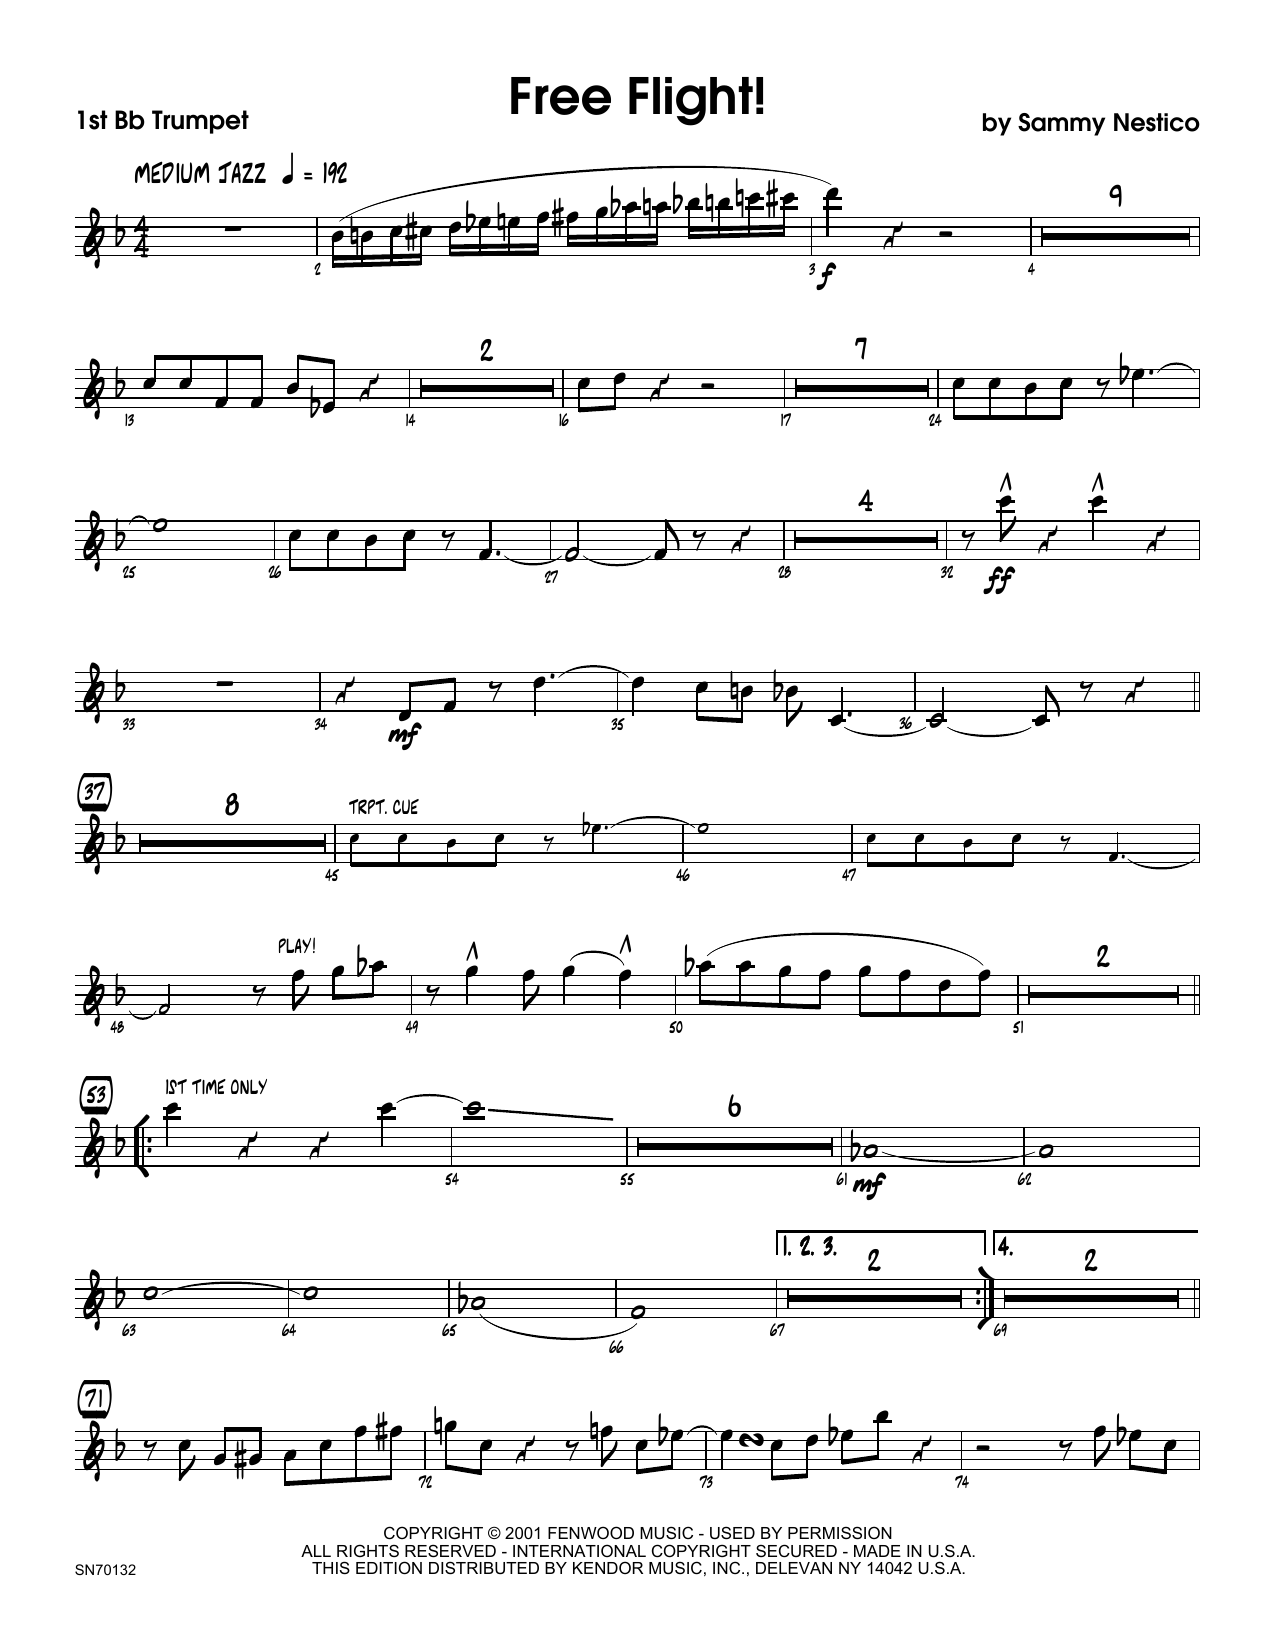 Download Sammy Nestico Free Flight! - 1st Bb Trumpet Sheet Music